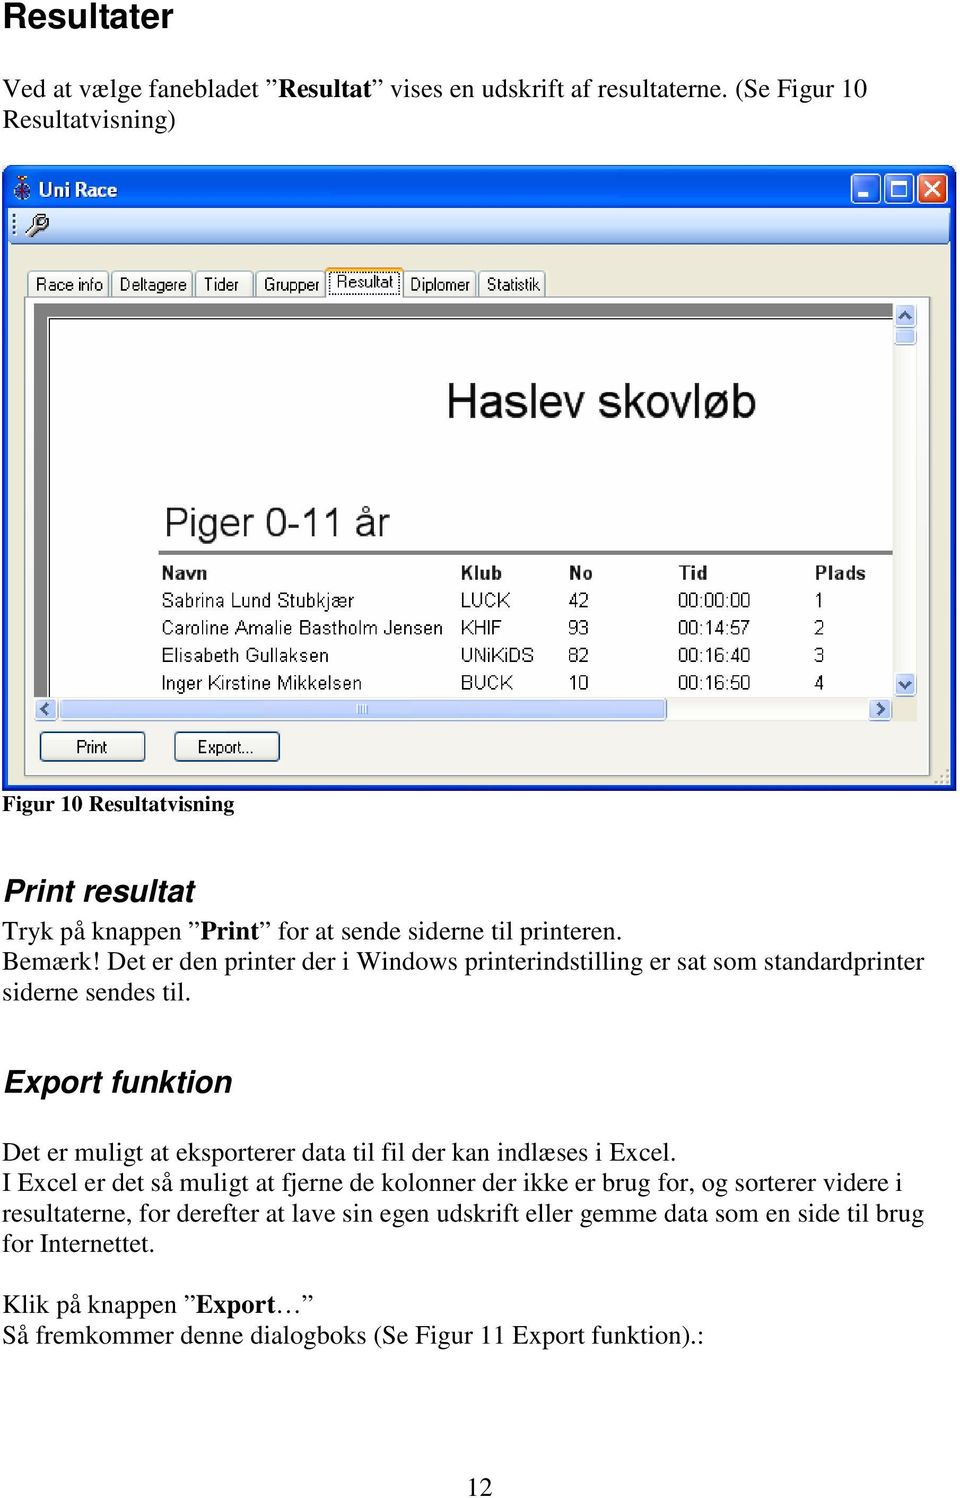 Det er den printer der i Windows printerindstilling er sat som standardprinter siderne sendes til.